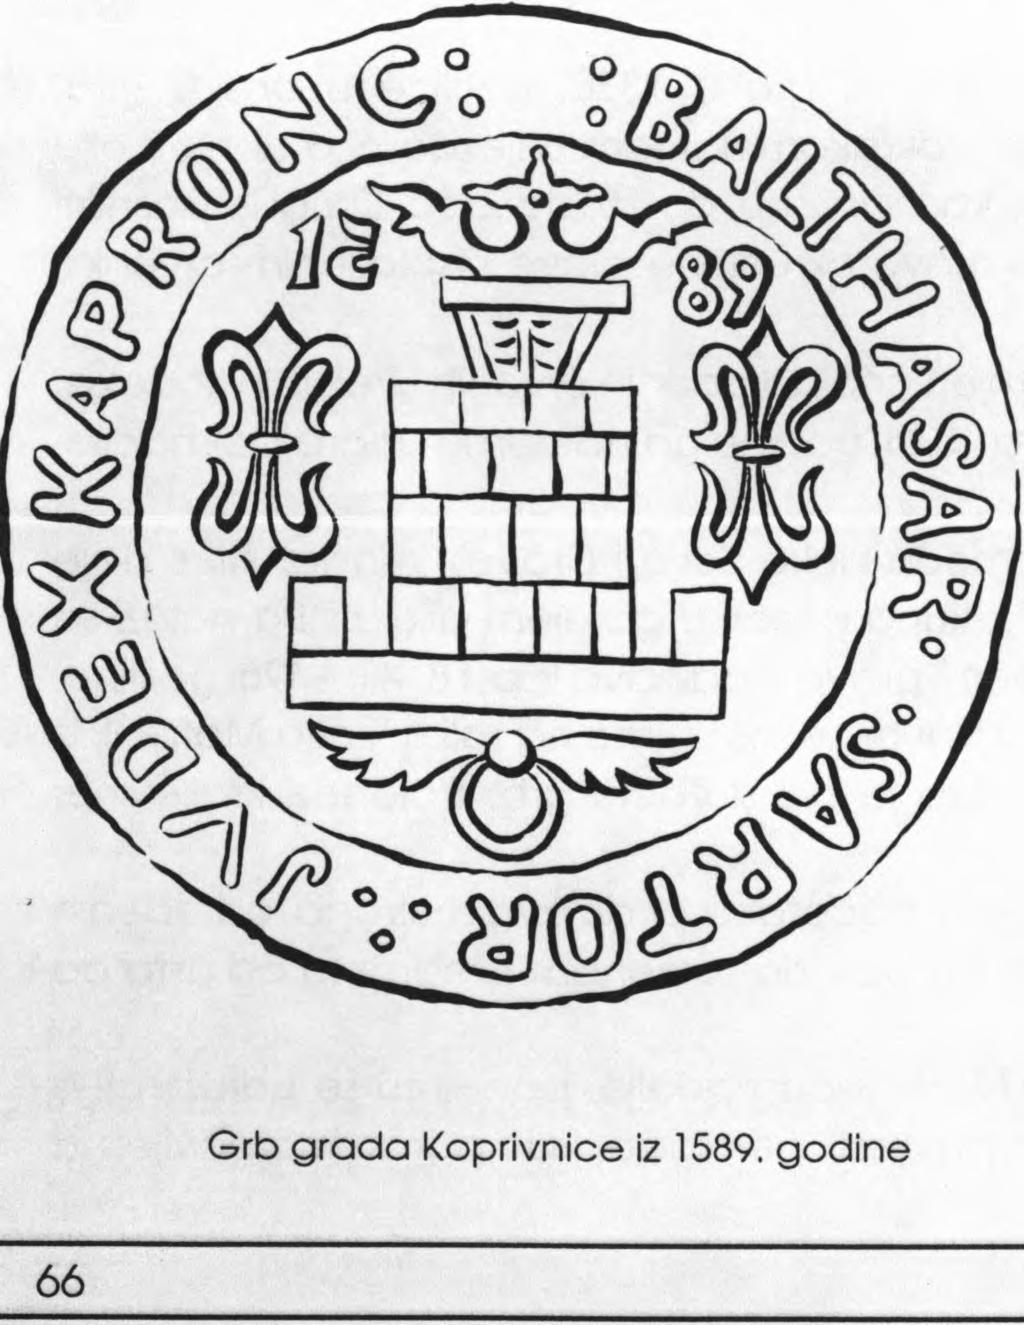 N ajsta rije tiska n o d je lo o hrvatskom grboslovlju je O rbinijevo4 djelo iz 1601., a slijedi g a R itte r-v ite z o v ić e v a 5 "S tem m athographya" iz 1701. godine.